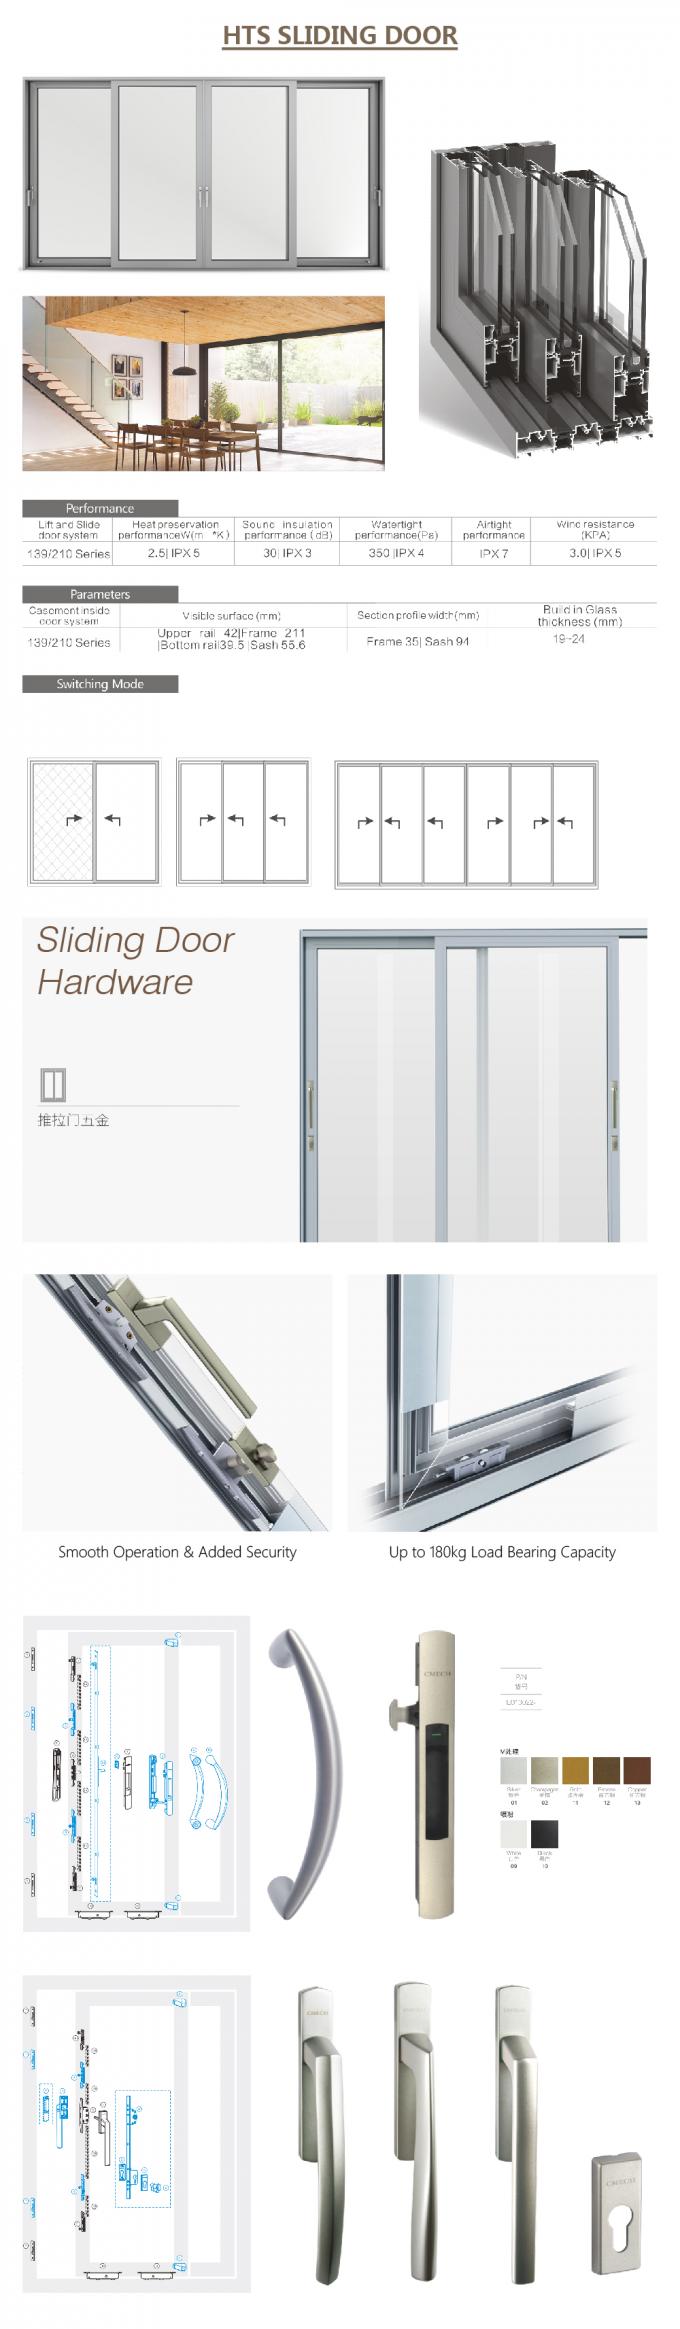 κινεζική συρόμενη πόρτα, σχεδιάγραμμα αλουμινίου για τη συρόμενη πόρτα γυαλιού, αυτόματη πόρτα που, λεπτομέρειες πορτών ολίσθησης doorAluminium ολίσθησης αλουμινίου γυαλιού